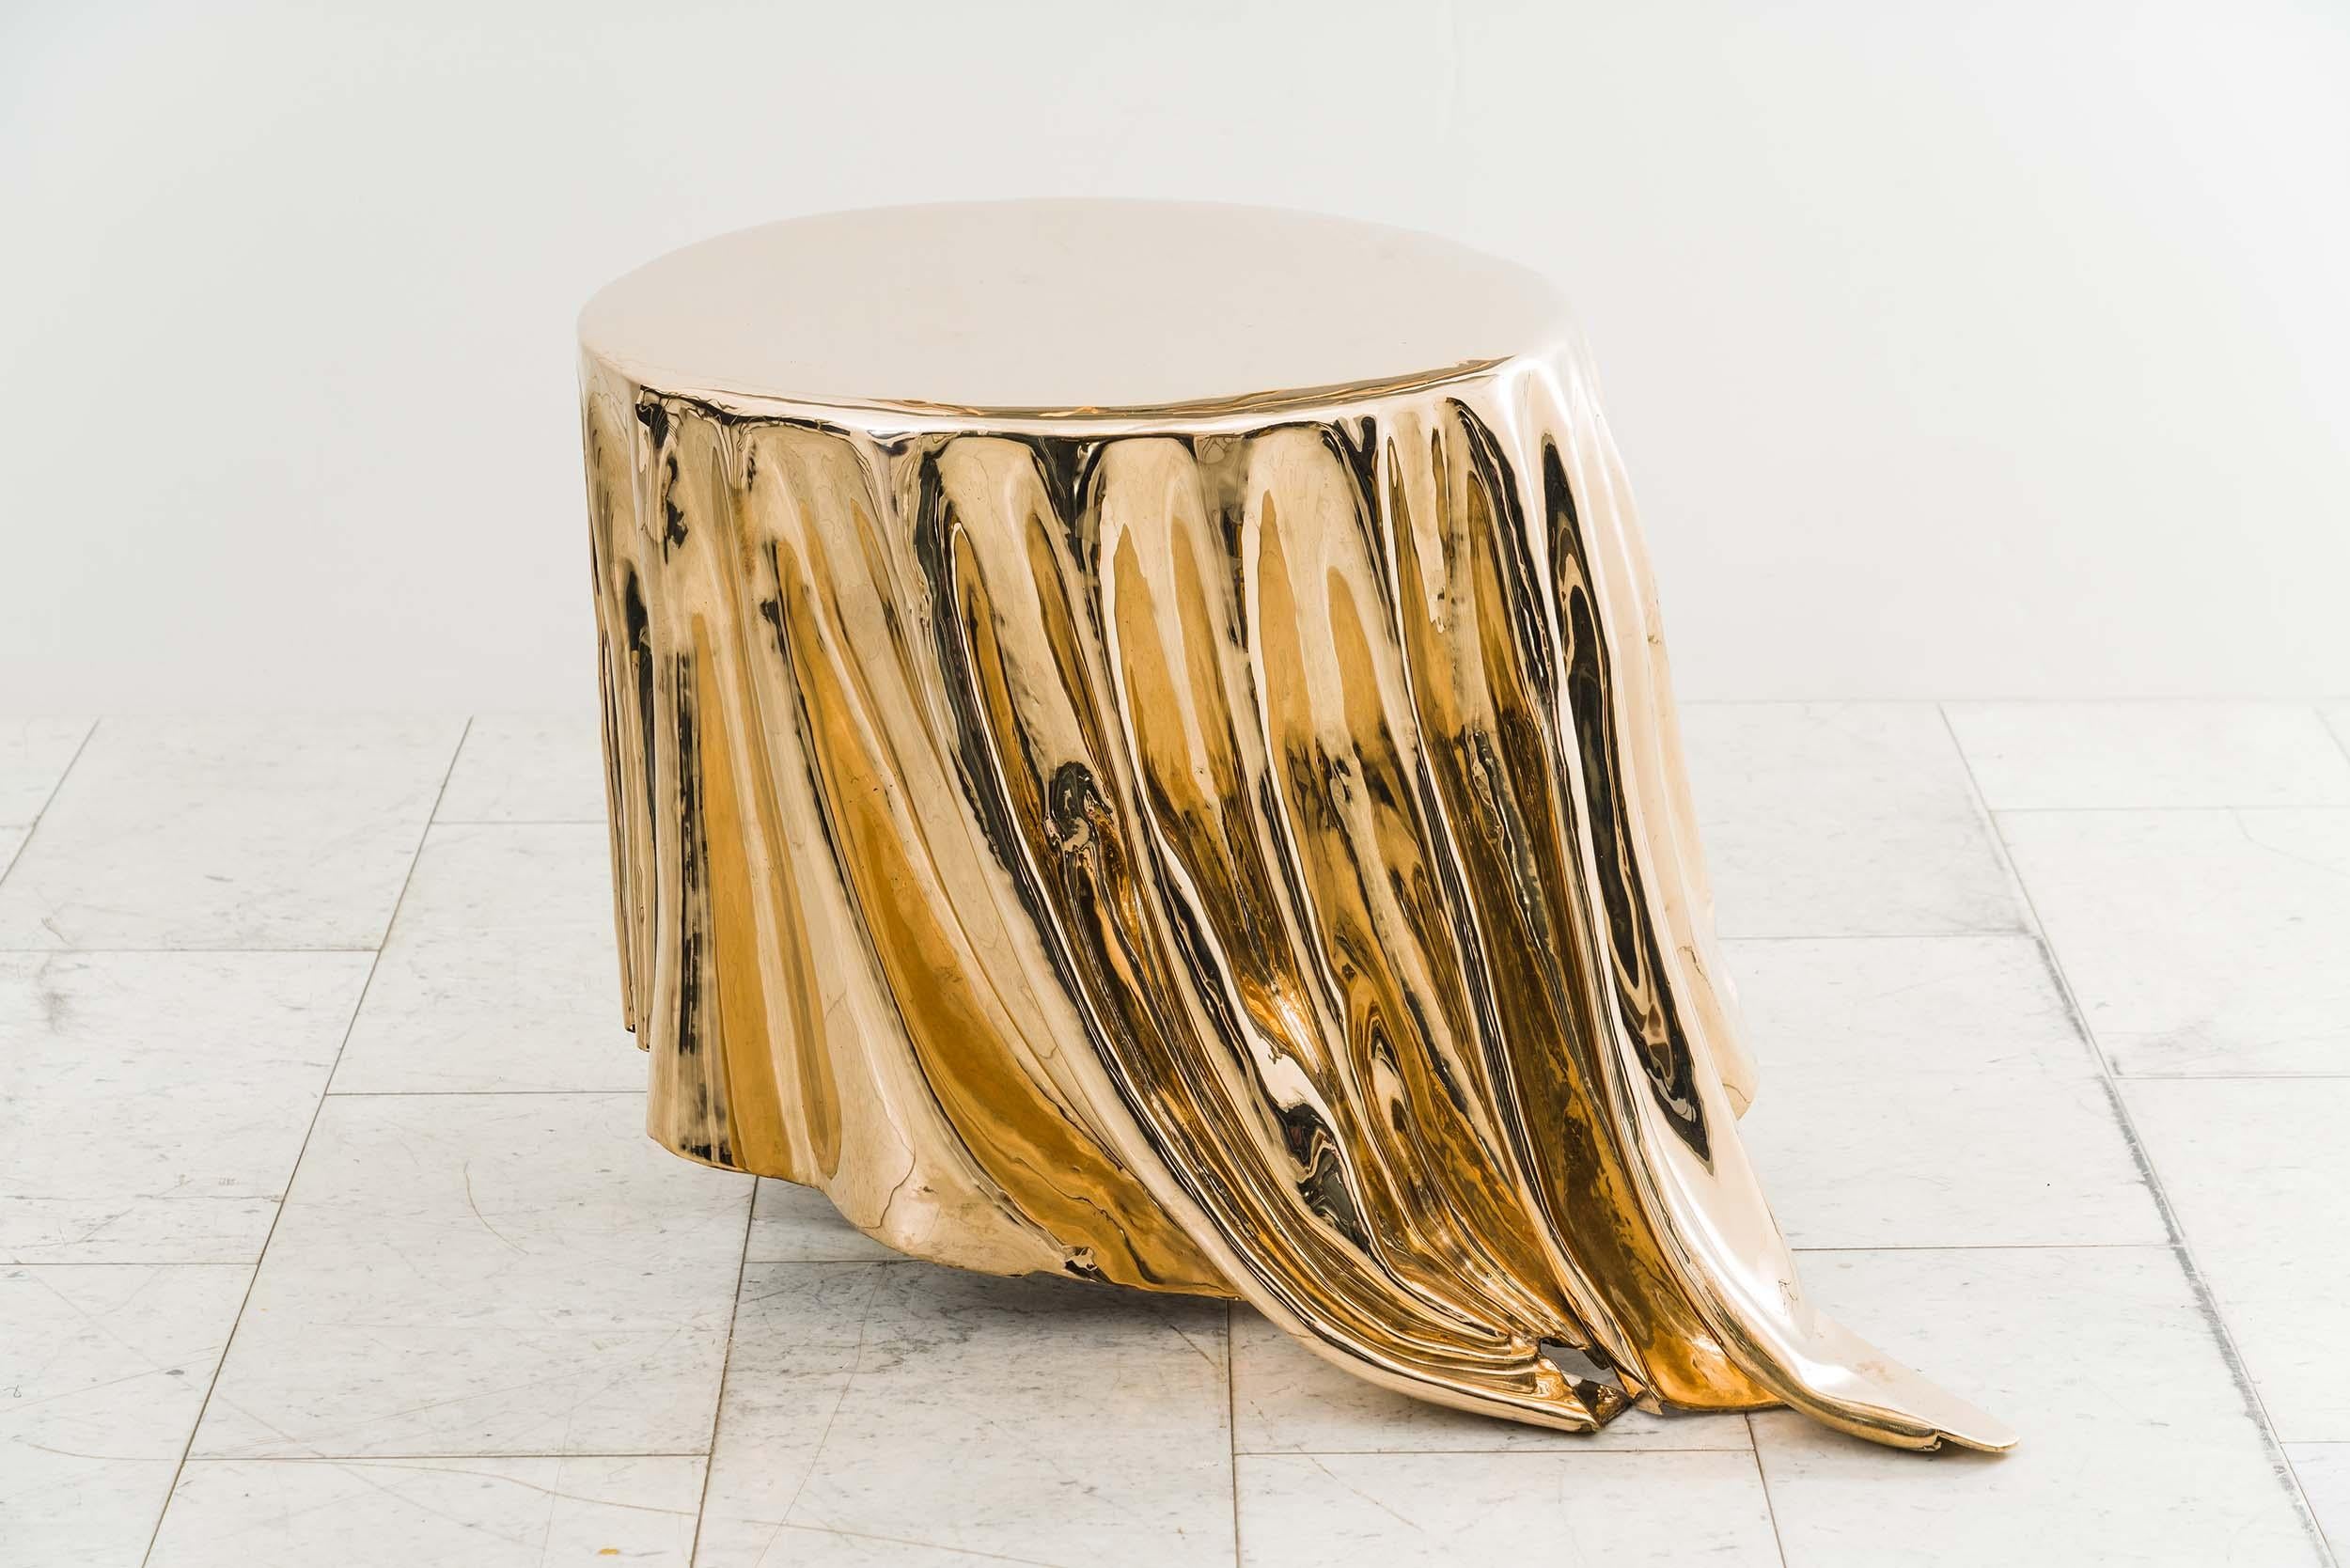 La table d'appoint Levitaz en bronze moulé est un chef-d'œuvre sculptural qui manifeste la fluidité et le mouvement dans une forme solide. Grâce à un travail artisanal exquis, le bronze se transforme en une cascade de lignes fluides, rappelant un